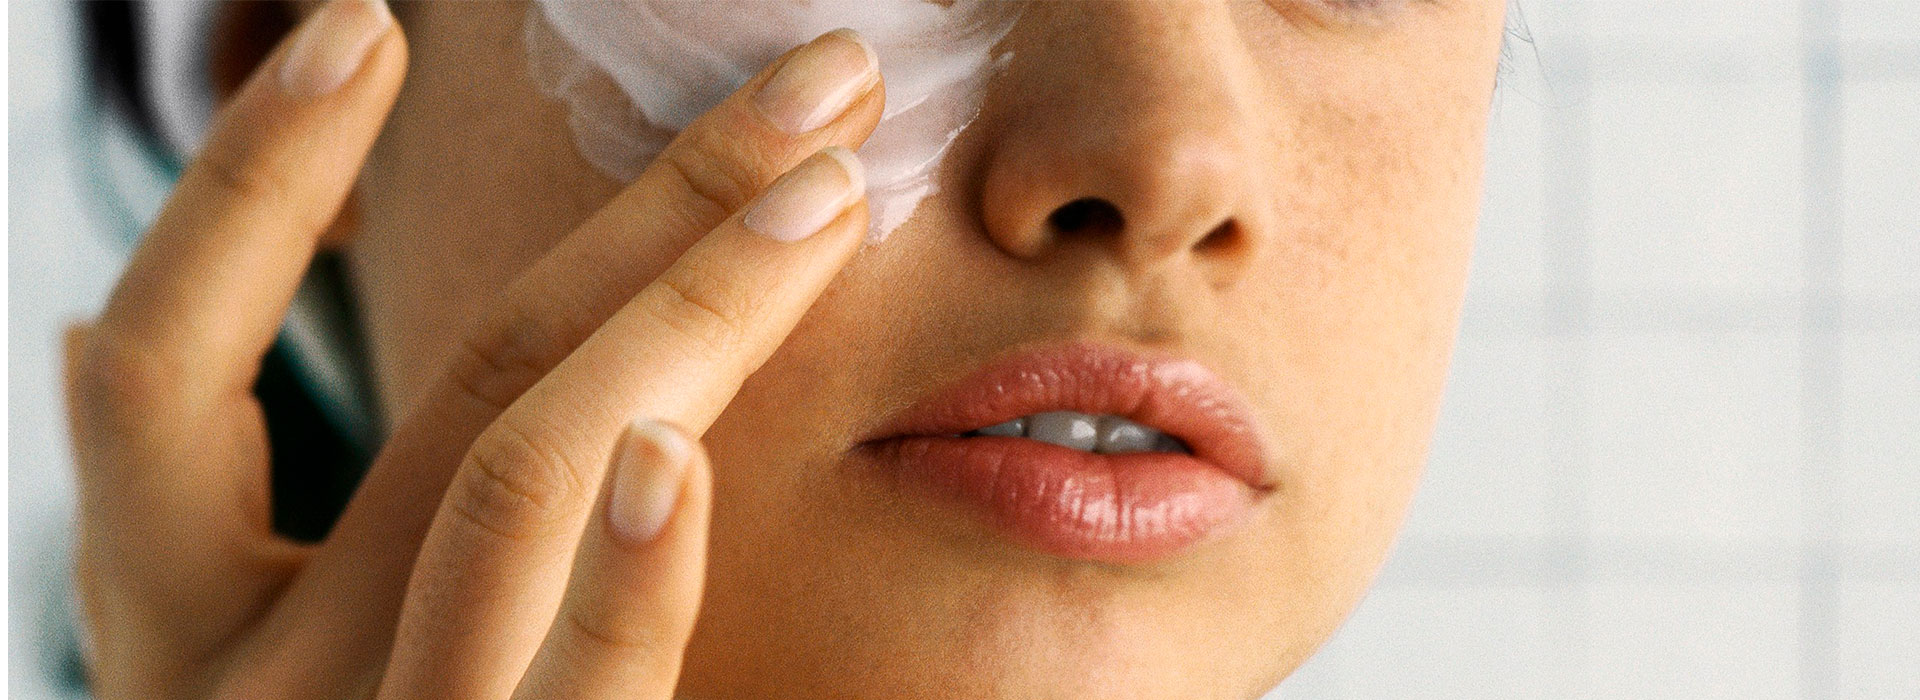 Os melhores tratamentos estética facial: limpeza de pele, cicatriz de acne, melasma, manchas, harmonização papada, pescoço e colo em Brasília